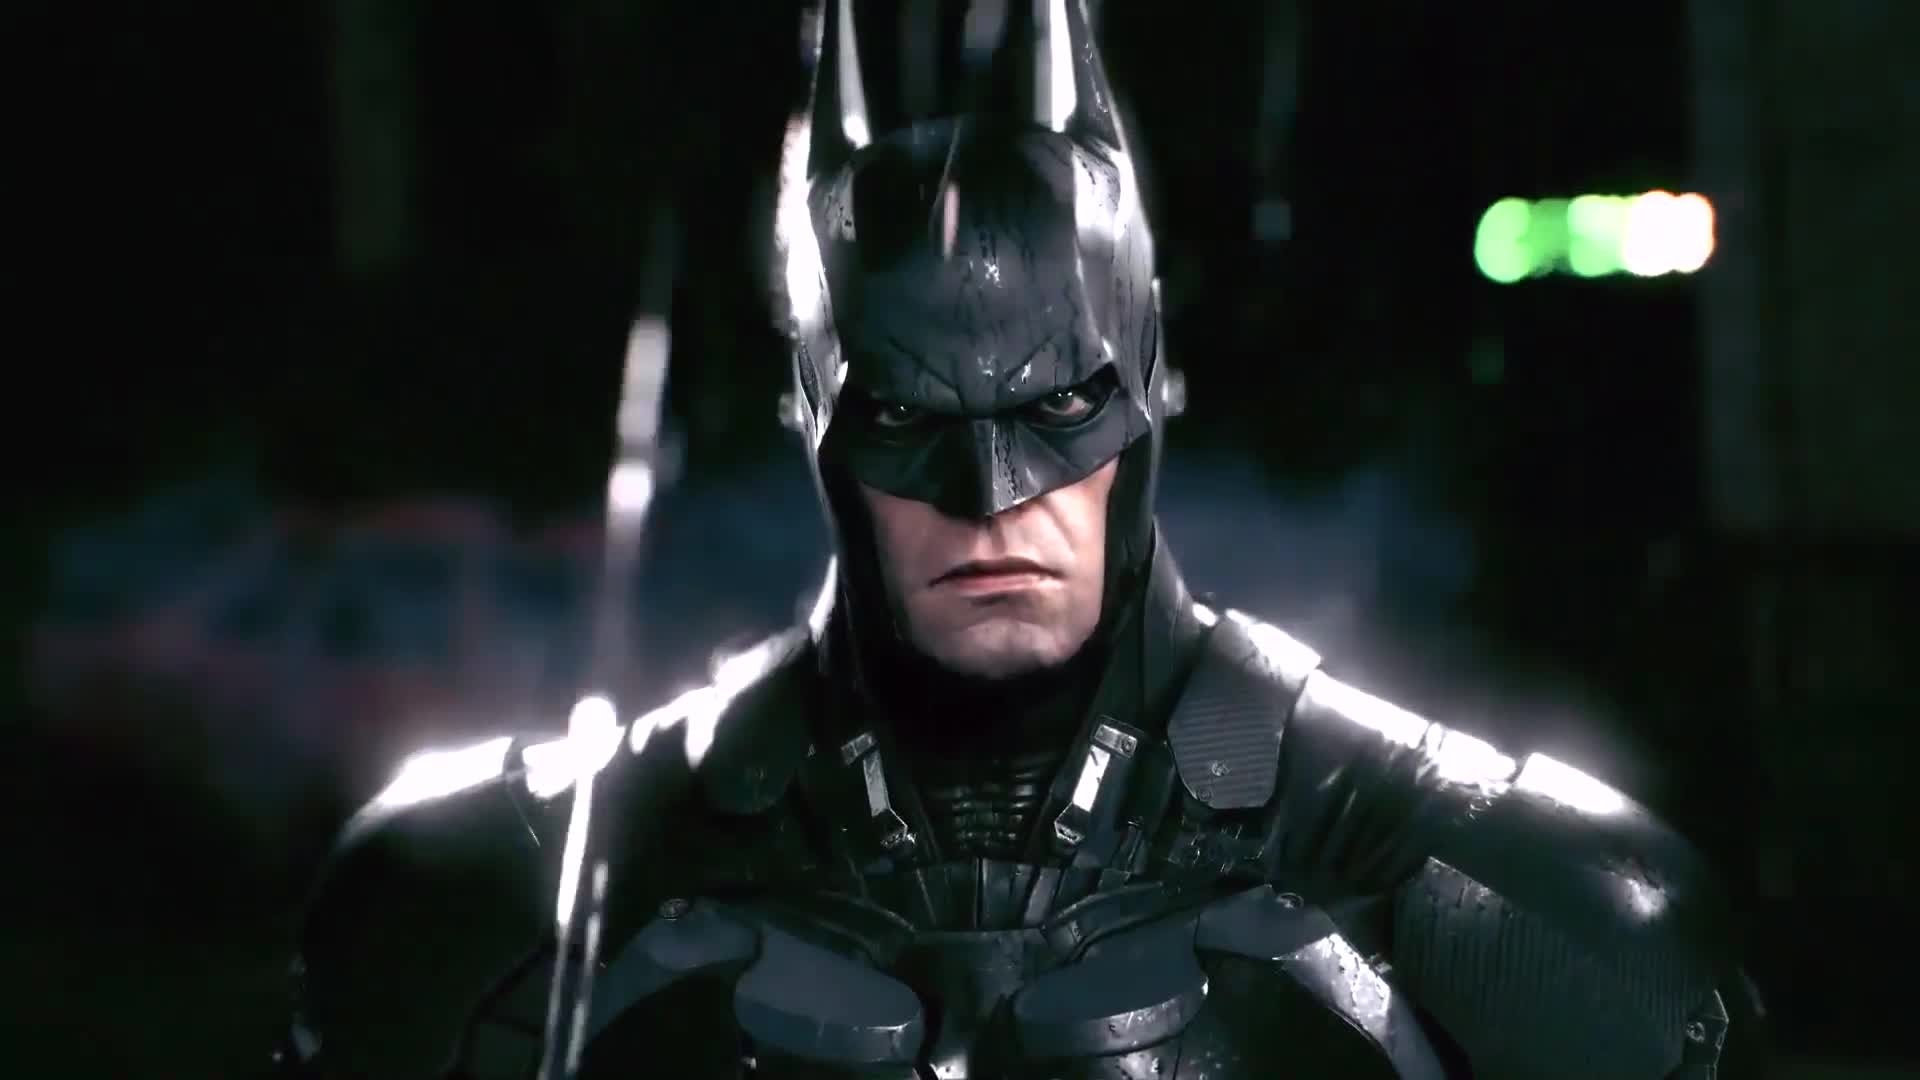 Batman Arkham Knight Backgrounds | PixelsTalk.Net